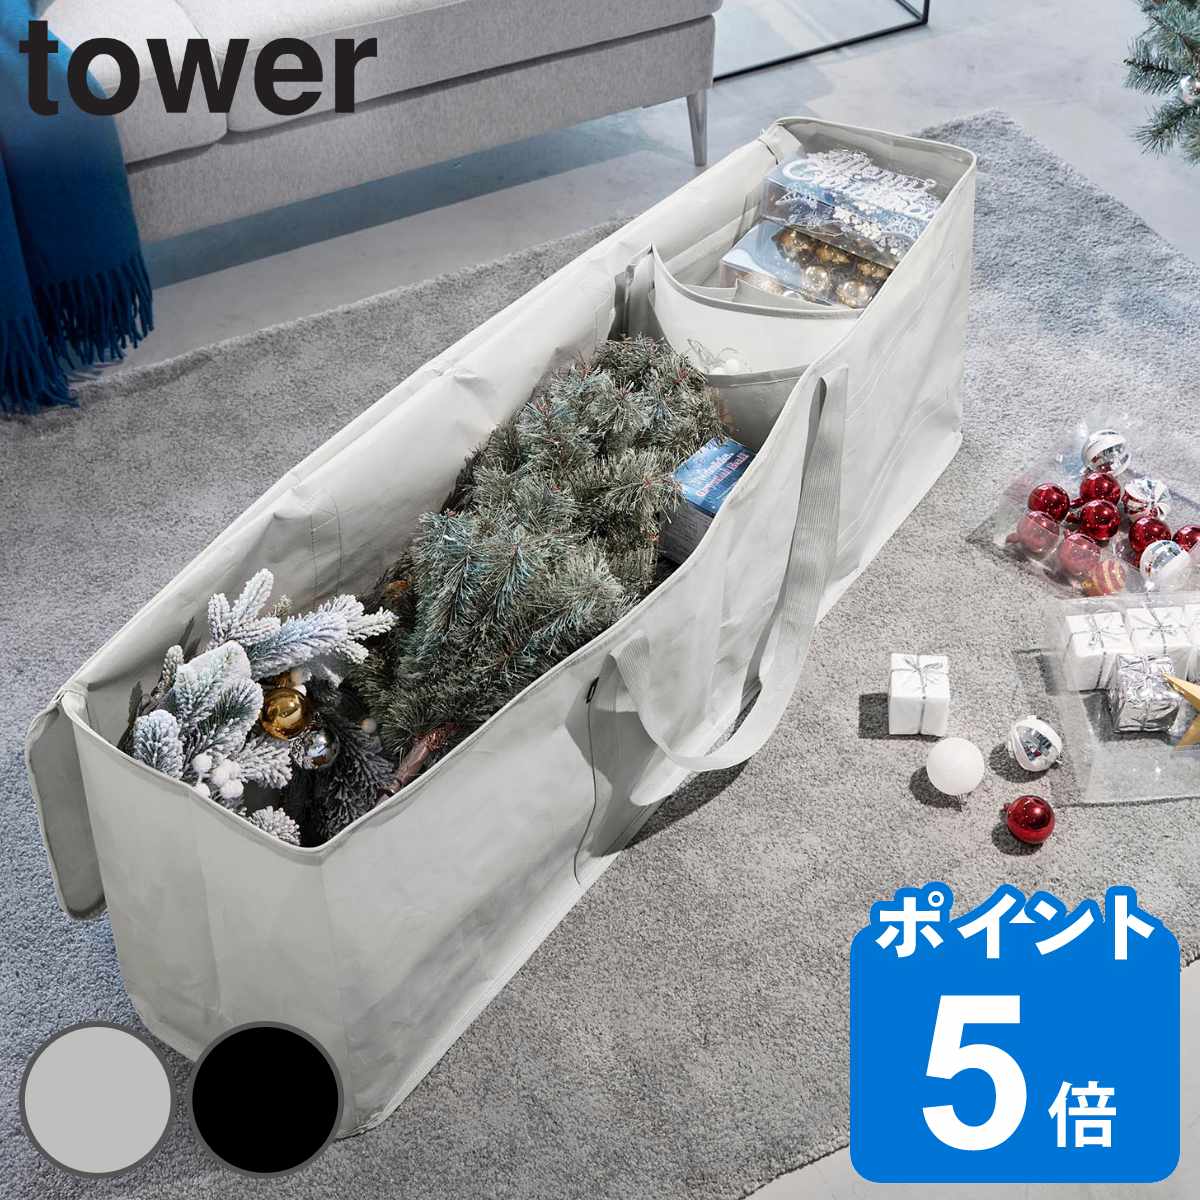 山崎実業 tower クリスマスツリー収納バッグ タワー